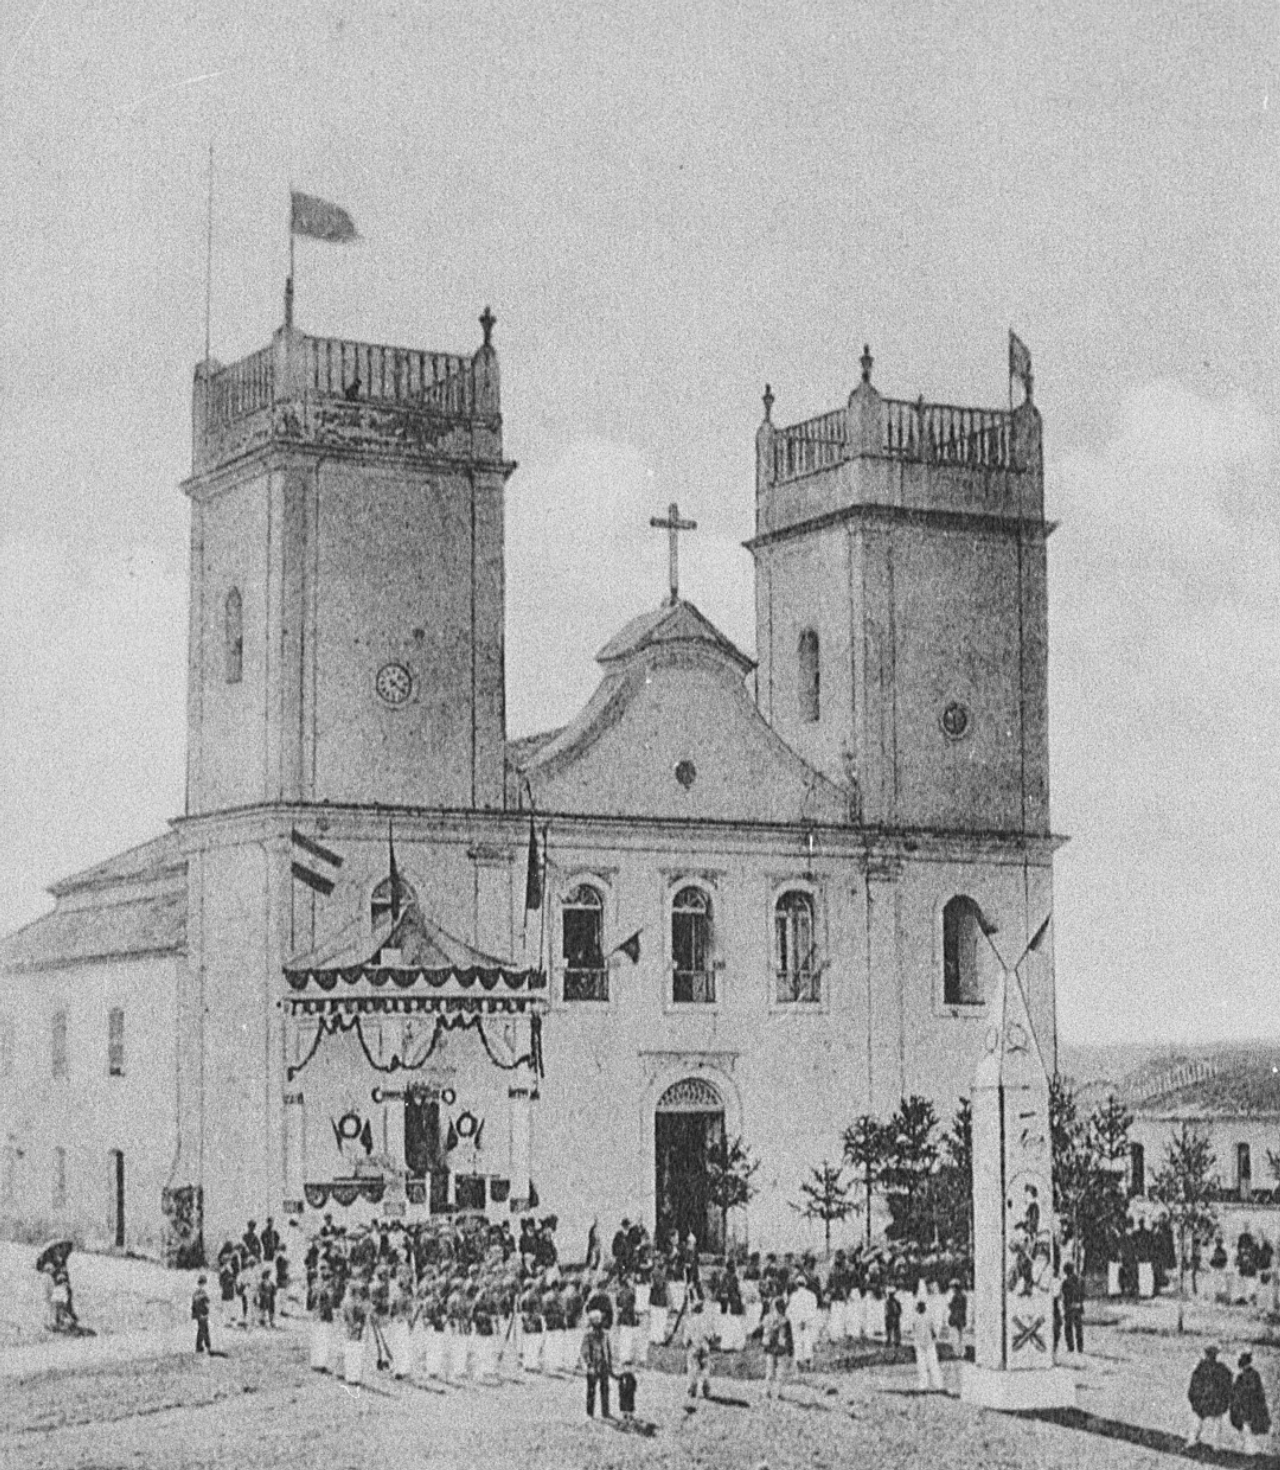 Retrato mostra a chegada dos Voluntários da Pátria – vindos da Guerra do Paraguai – em frente à Igreja Matriz (hoje Catedral Metropolitana de Curitiba), em abril de 1870. Foto: Reprodução/ Acervo Casa da Memória